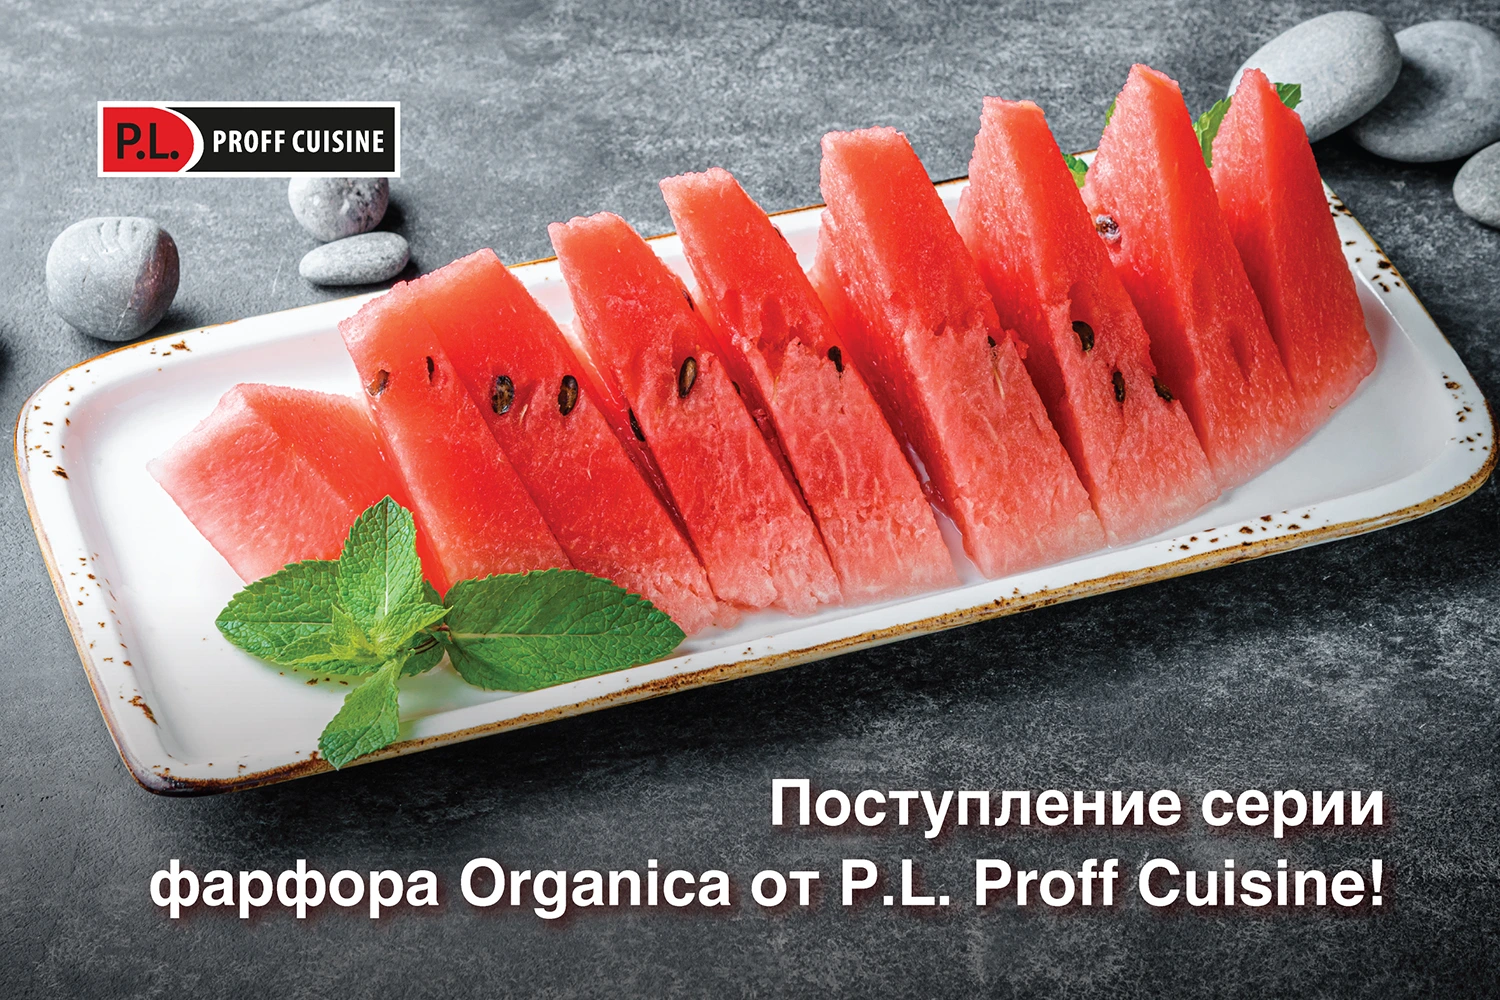 Поступление серии фарфора Organica от P.L. Proff Cuisine!